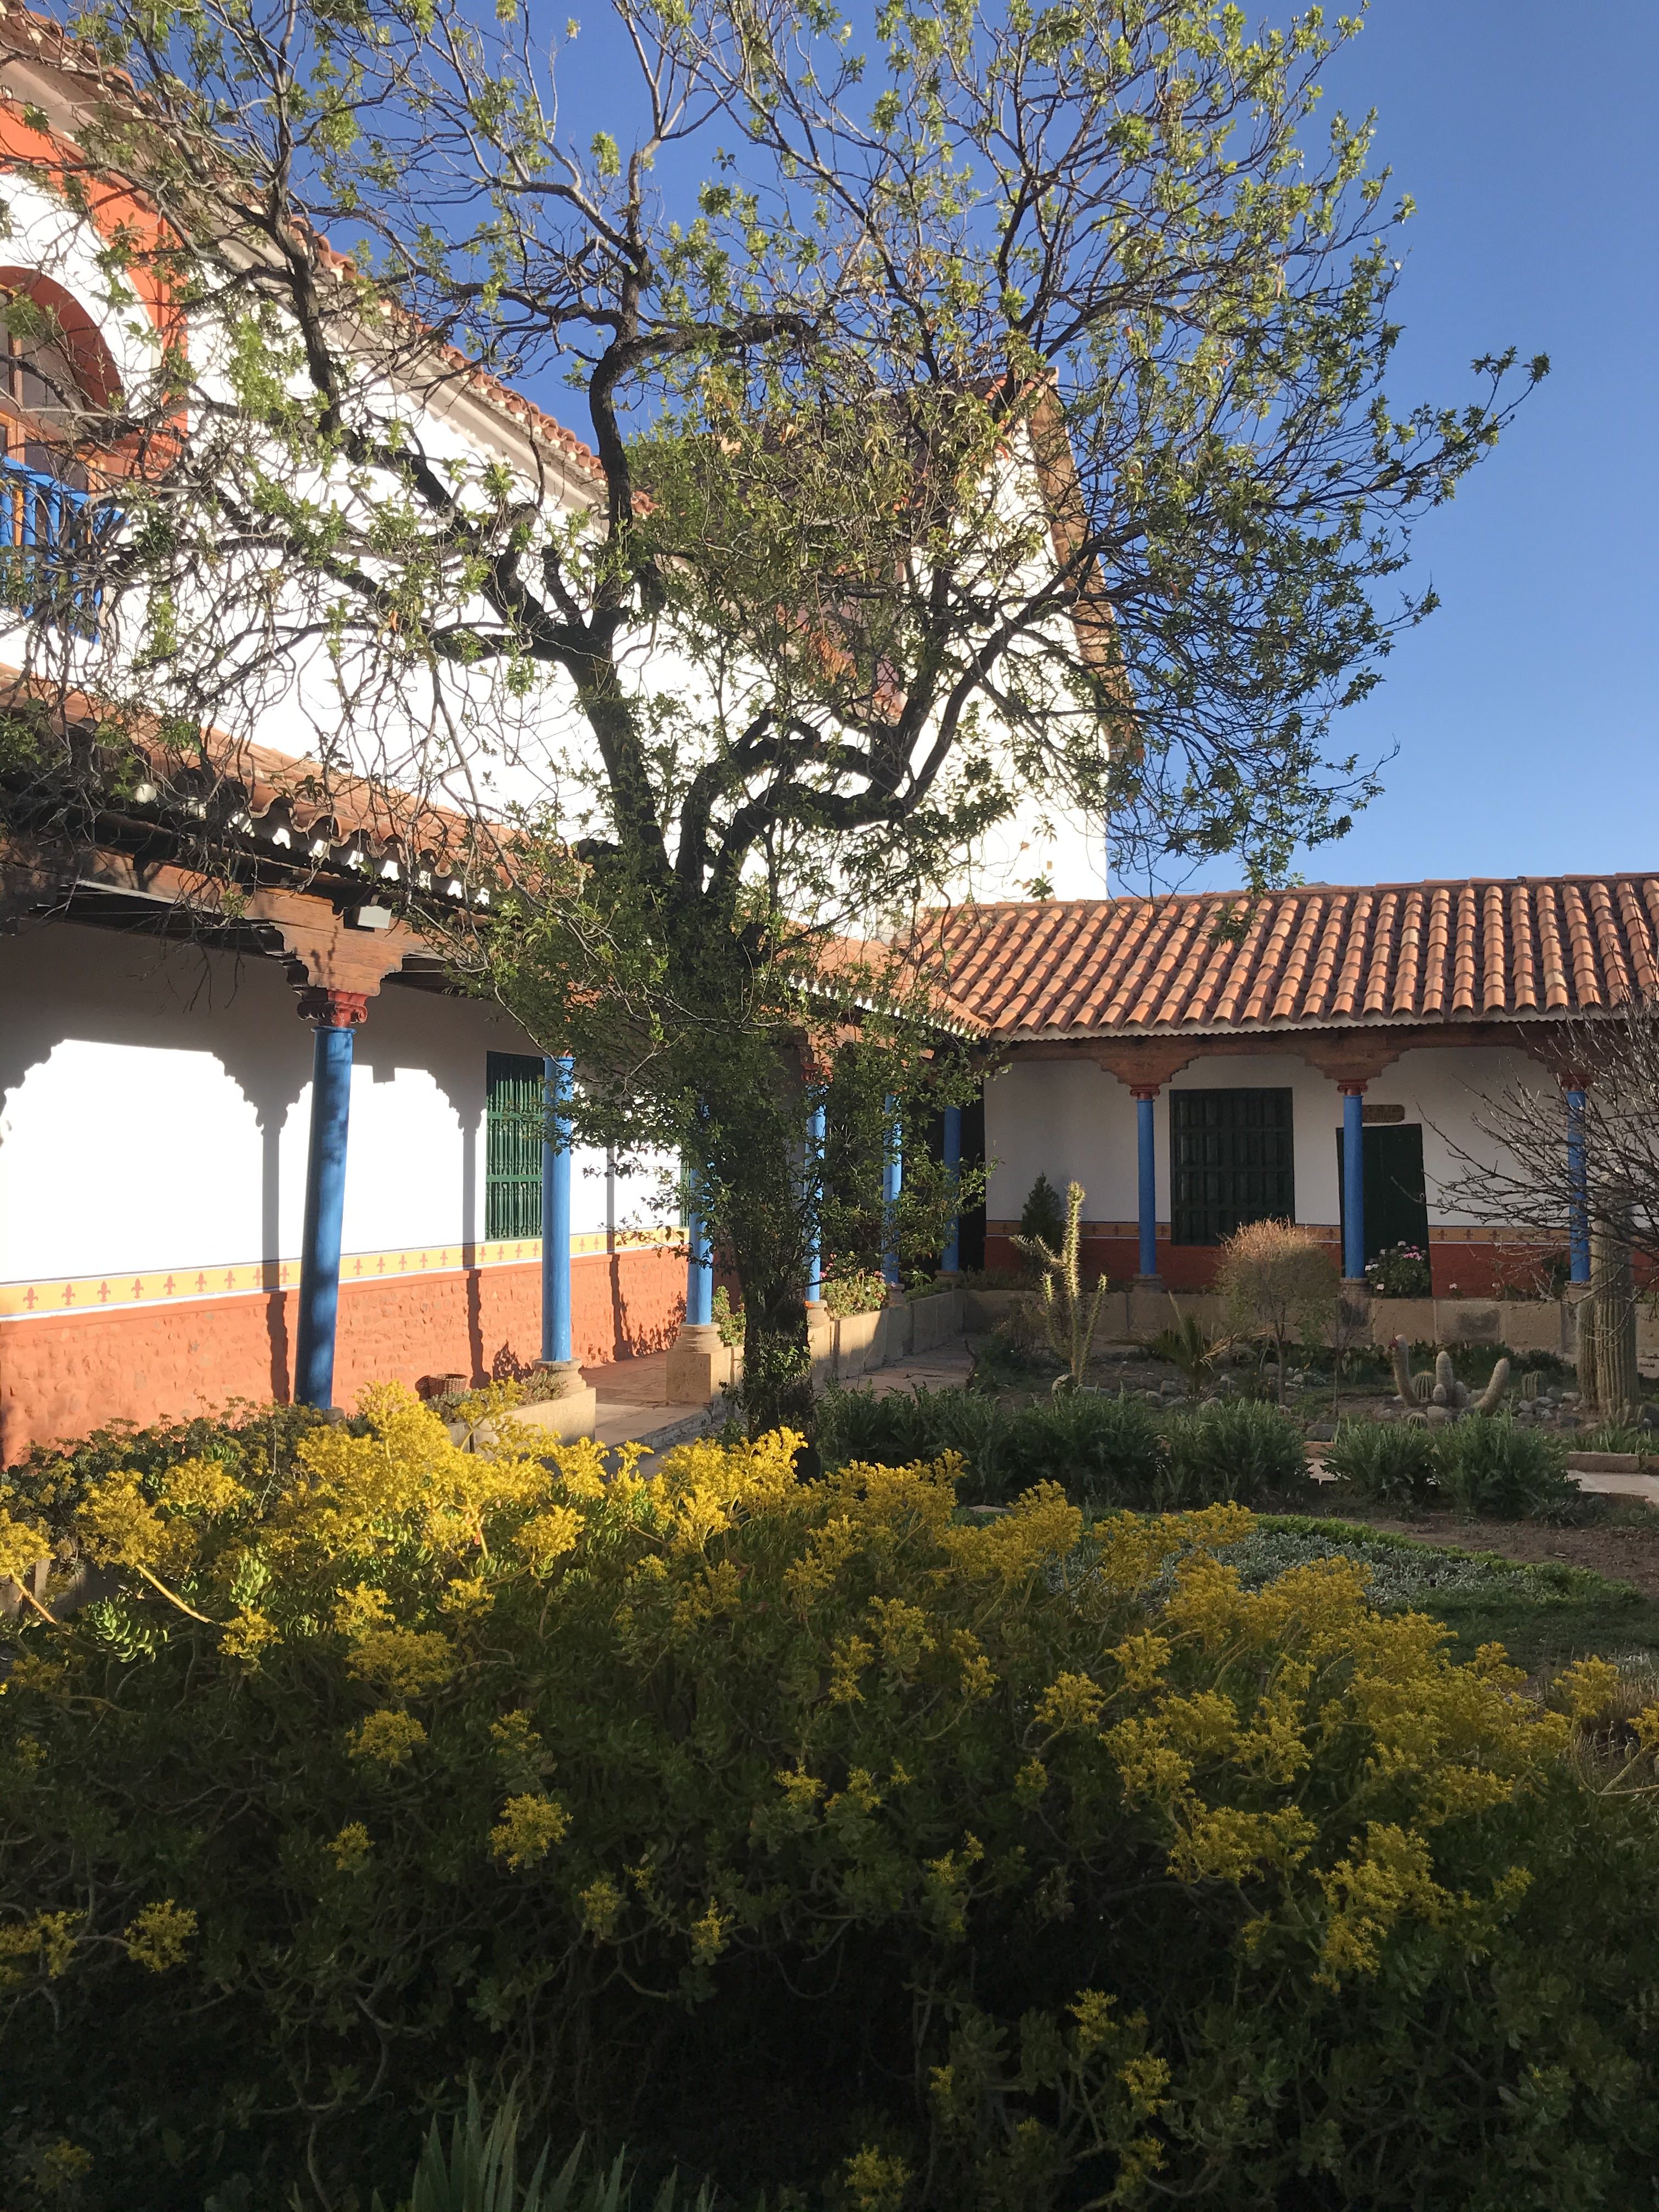 Another patio, Convento de Santa Teresa